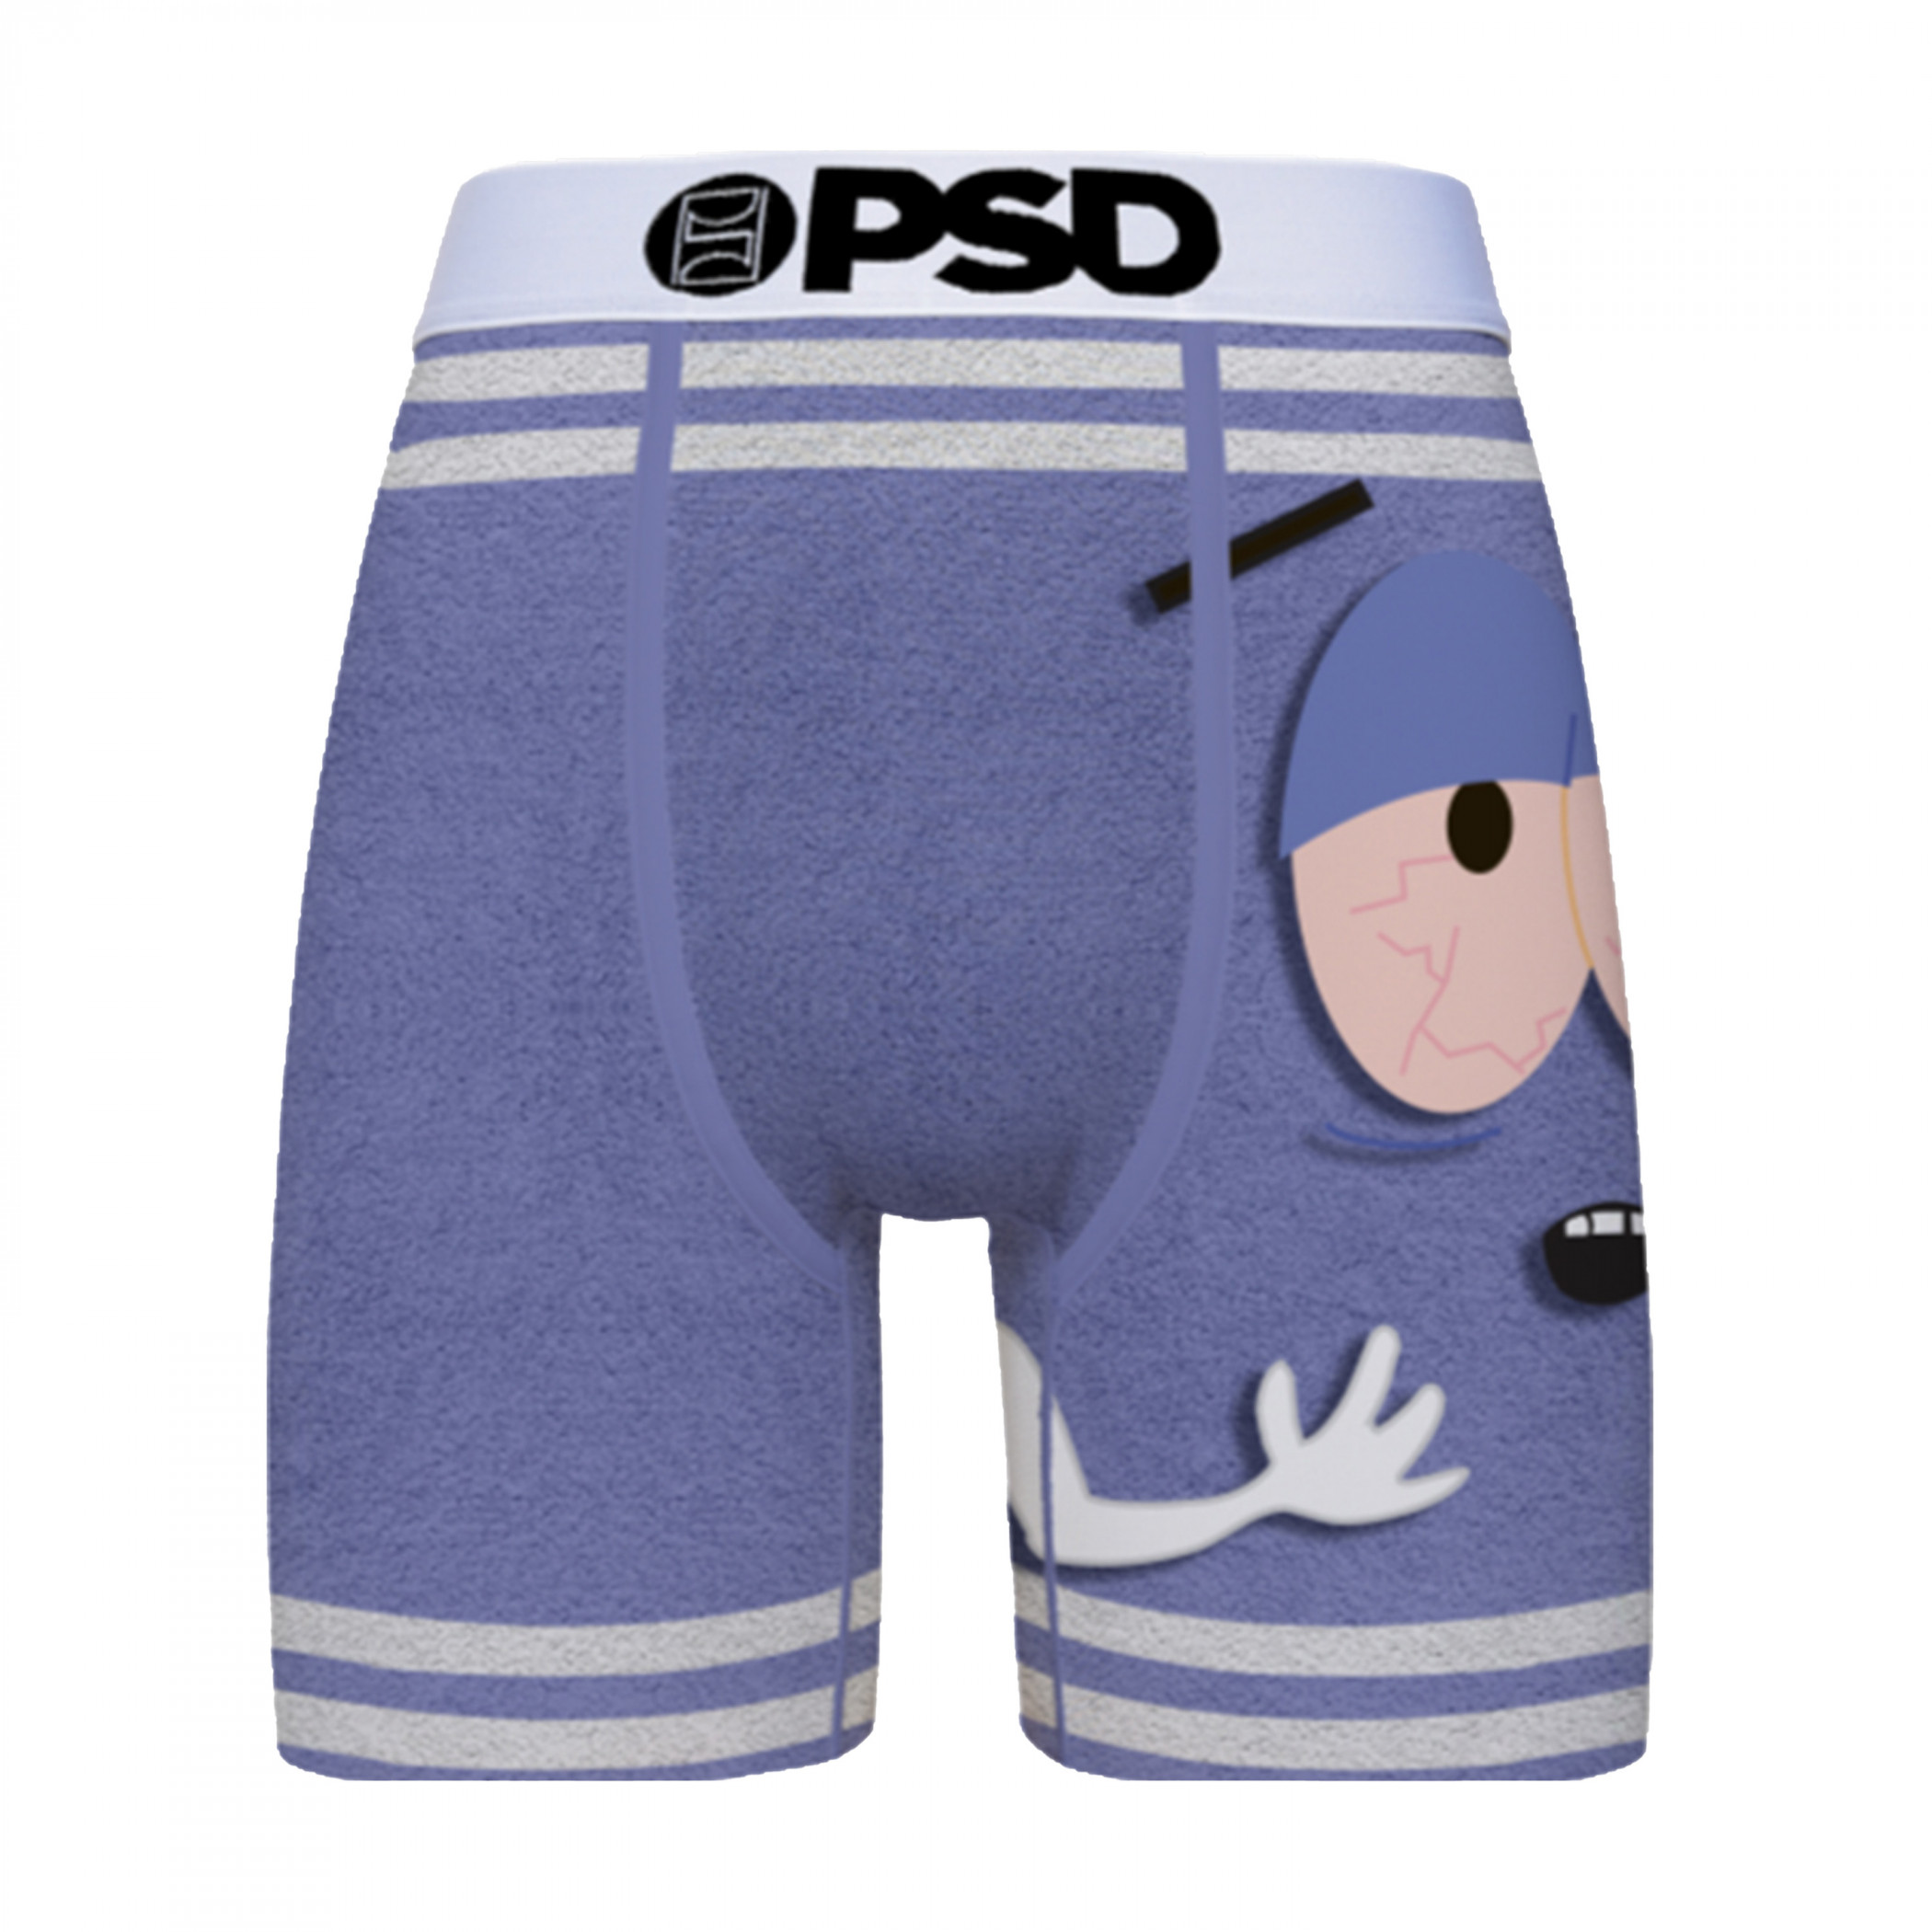 South Park Towelie PSD Boxer Briefs